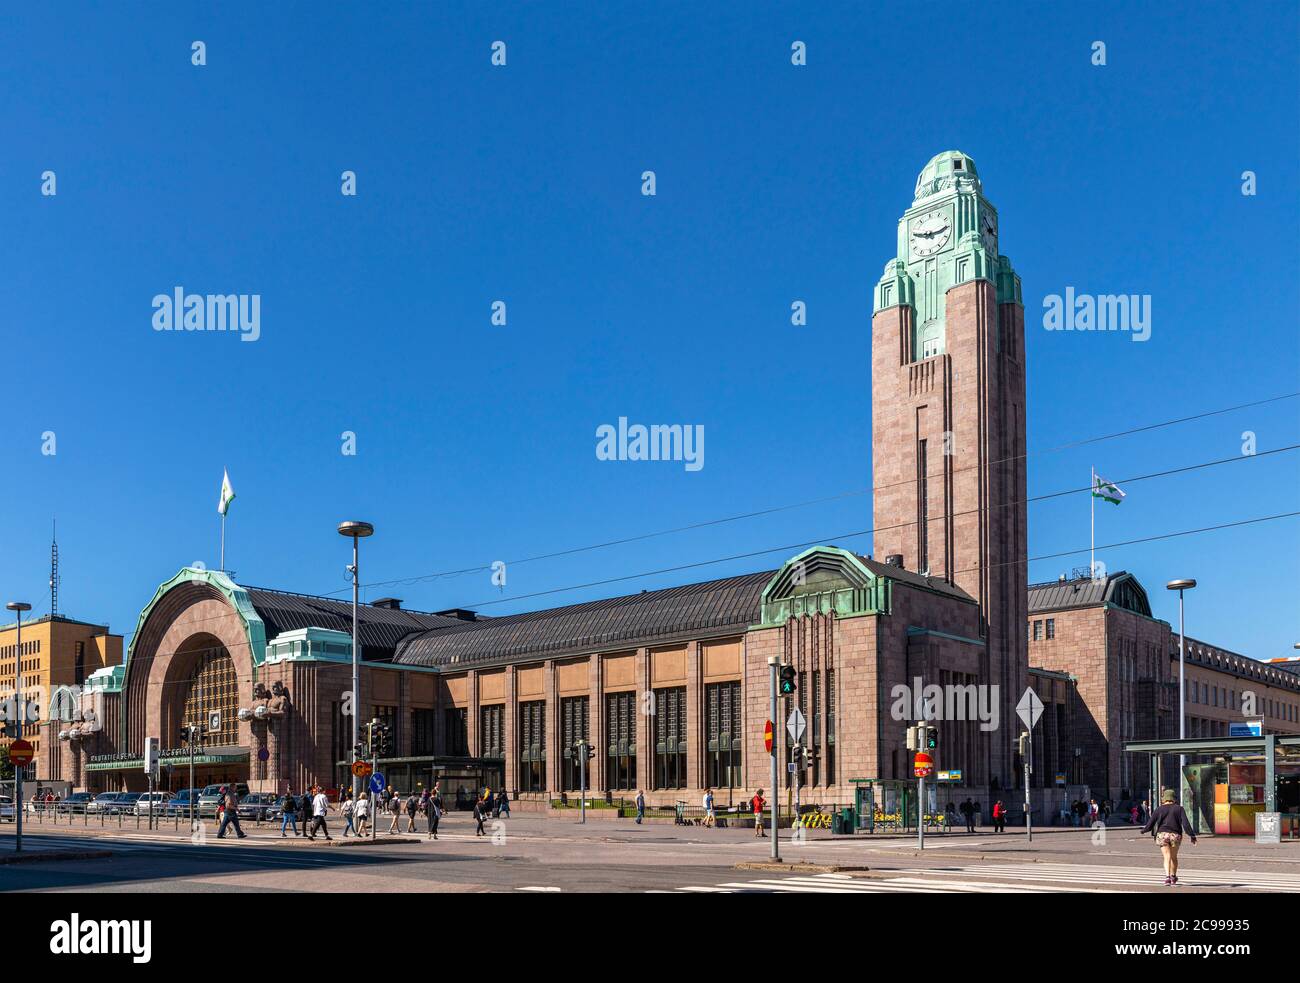 Helsinki, Finlandia - 26 luglio 2020: La stazione ferroviaria principale di Helsinki è un edificio distintivo nel cuore della capitale finlandese. È un hub per i trasporti pubblici Foto Stock